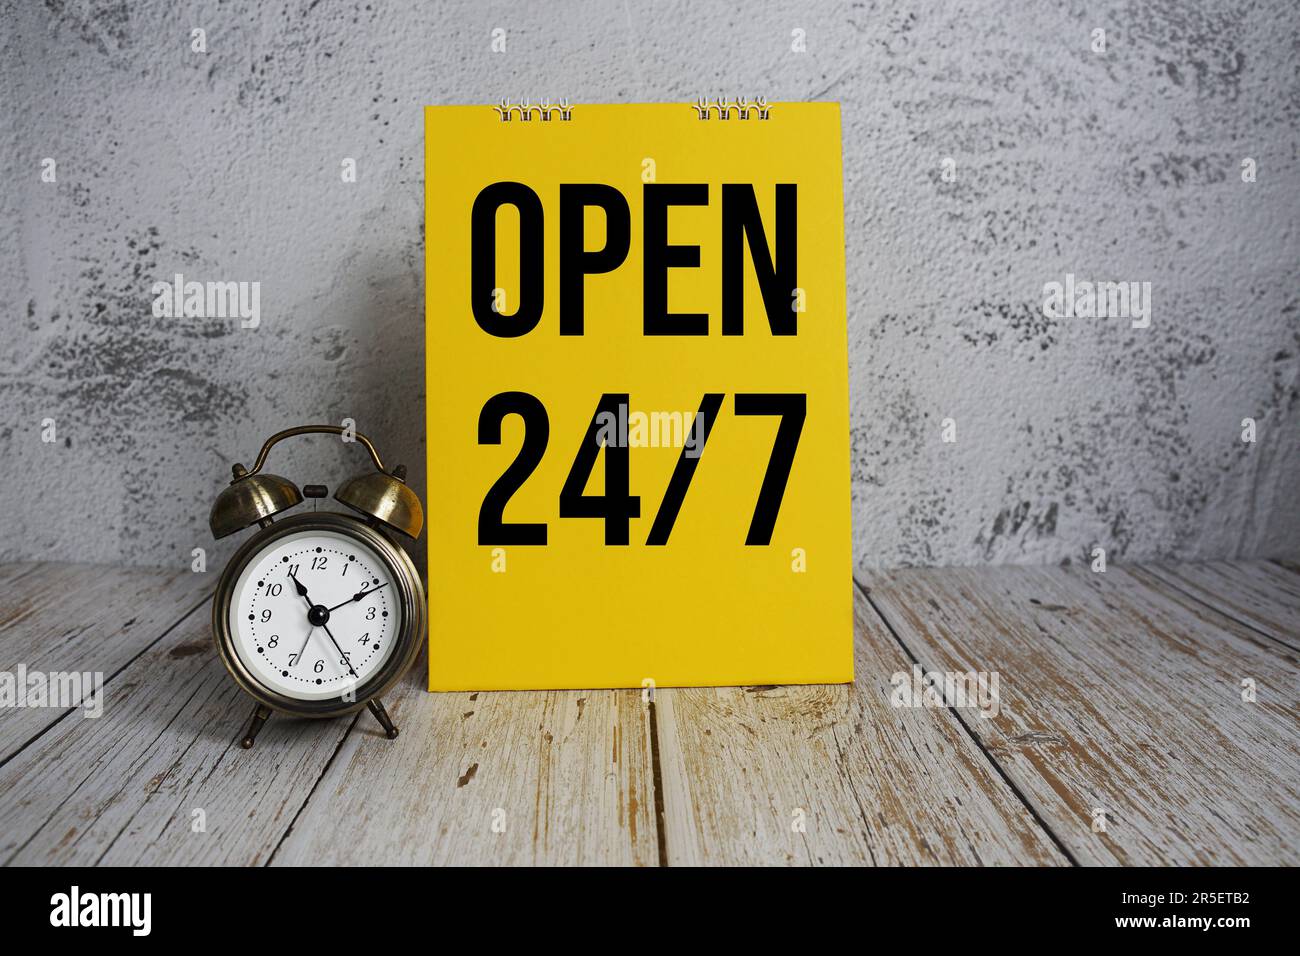 24 Stunden Geöffnet. Textnachricht und Wecker mit 7-tägigem Service auf  Holzhintergrund Stockfotografie - Alamy